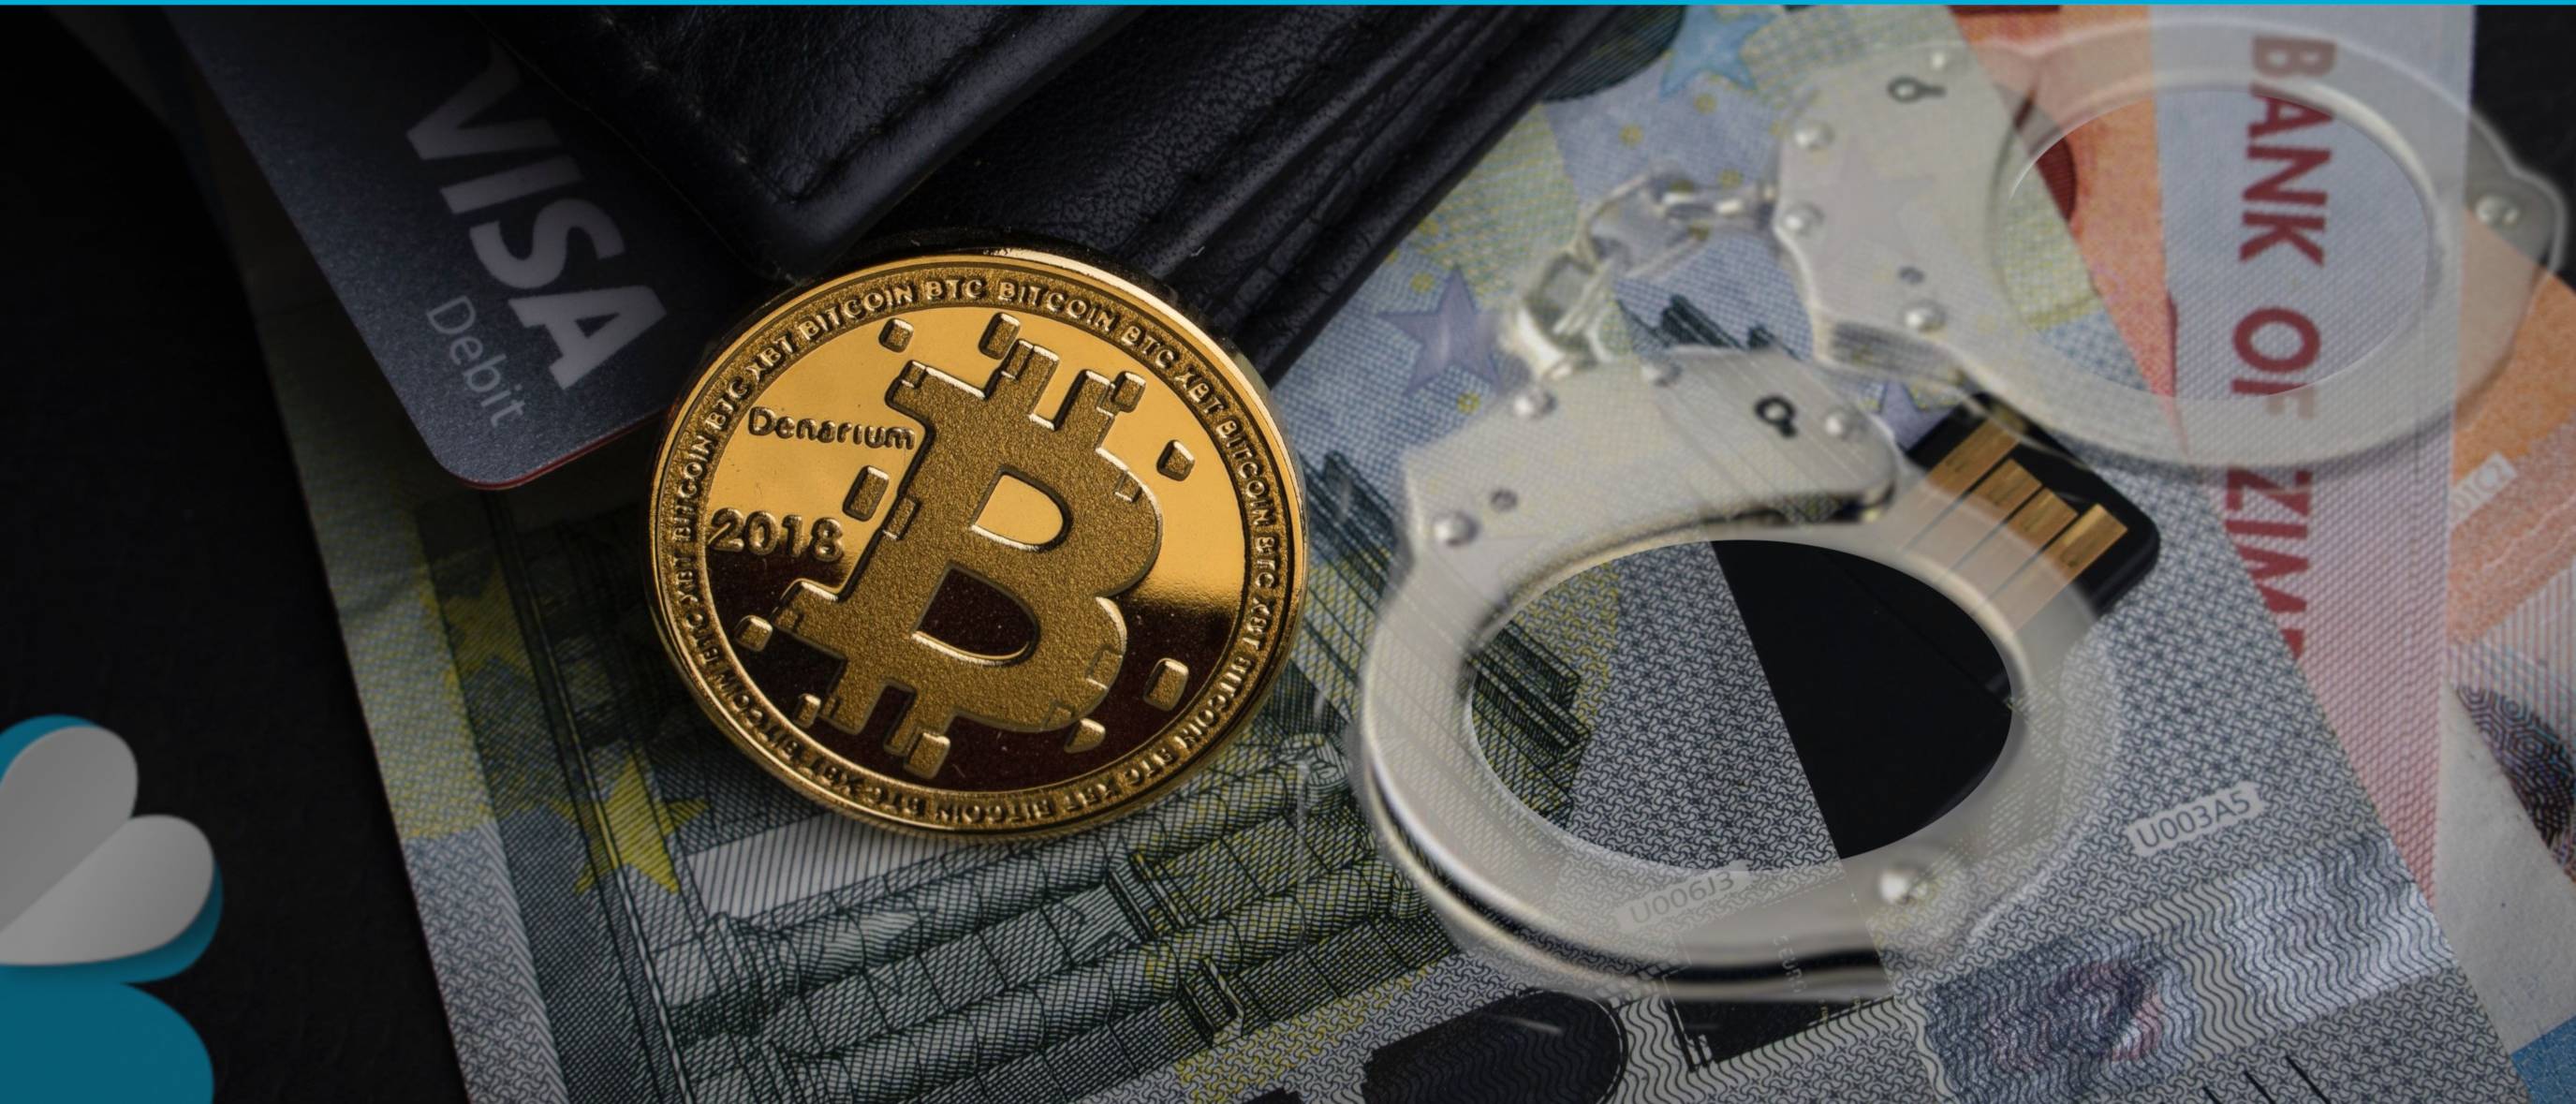 Primera condena por estafa con bitcoins